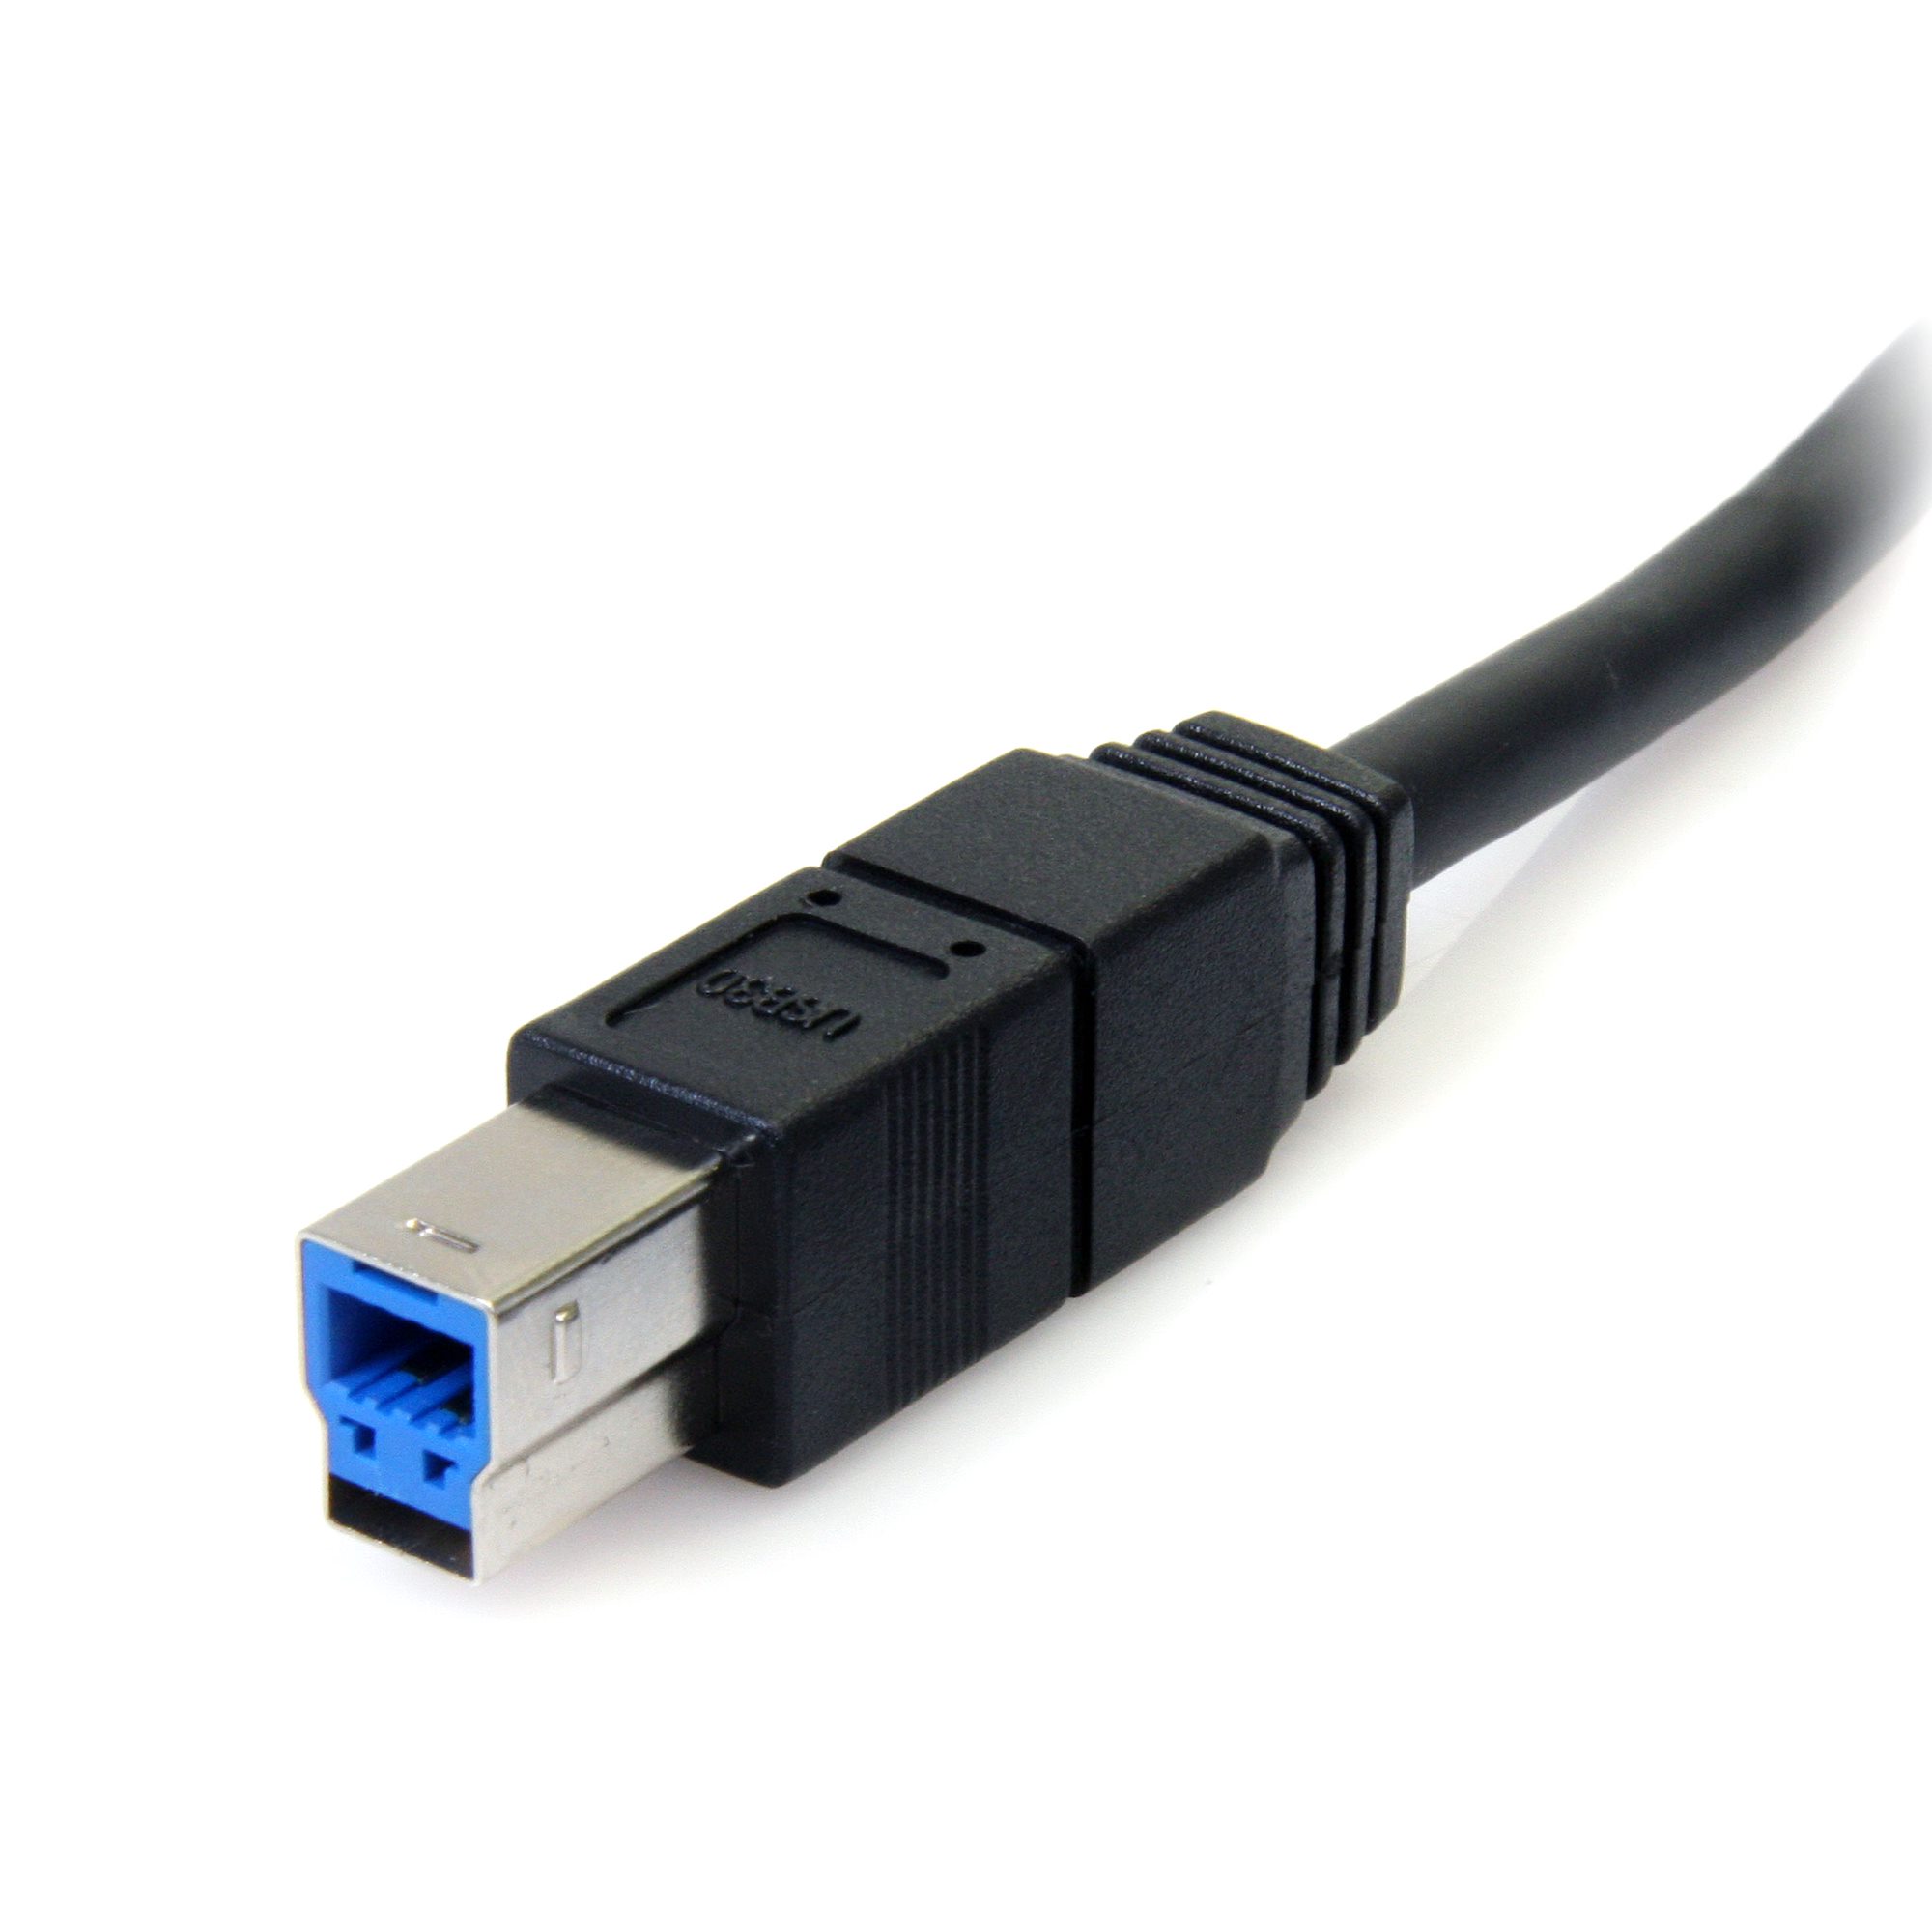 10 ft USB 3.0 Cable A/B - Cables | StarTech.com